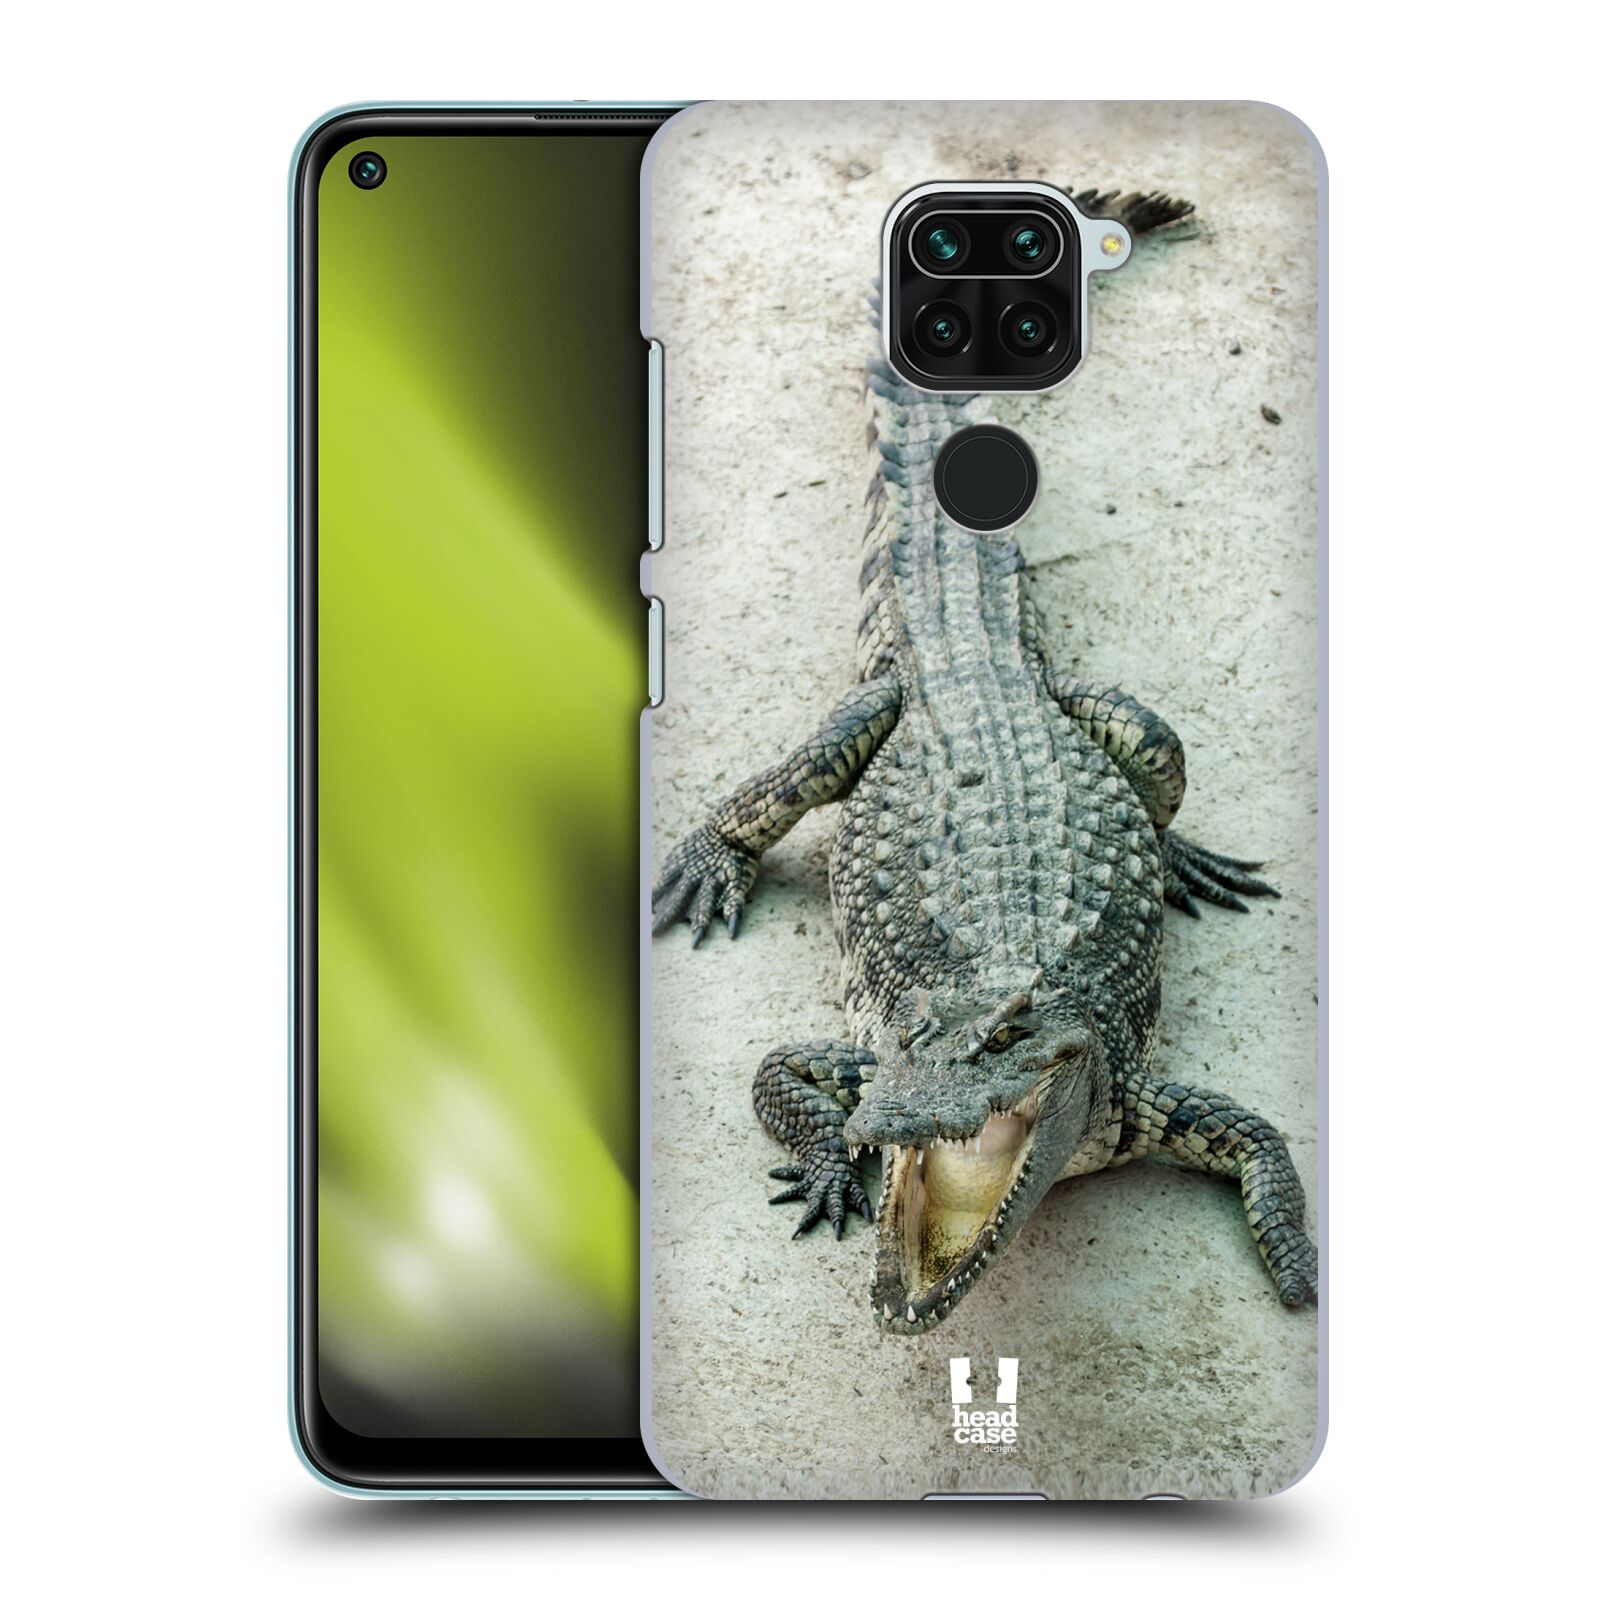 Plastový obal na mobil Xiaomi Redmi Note 9 vzor Divočina, Divoký život a zvířata foto KROKODÝL, KAJMAN